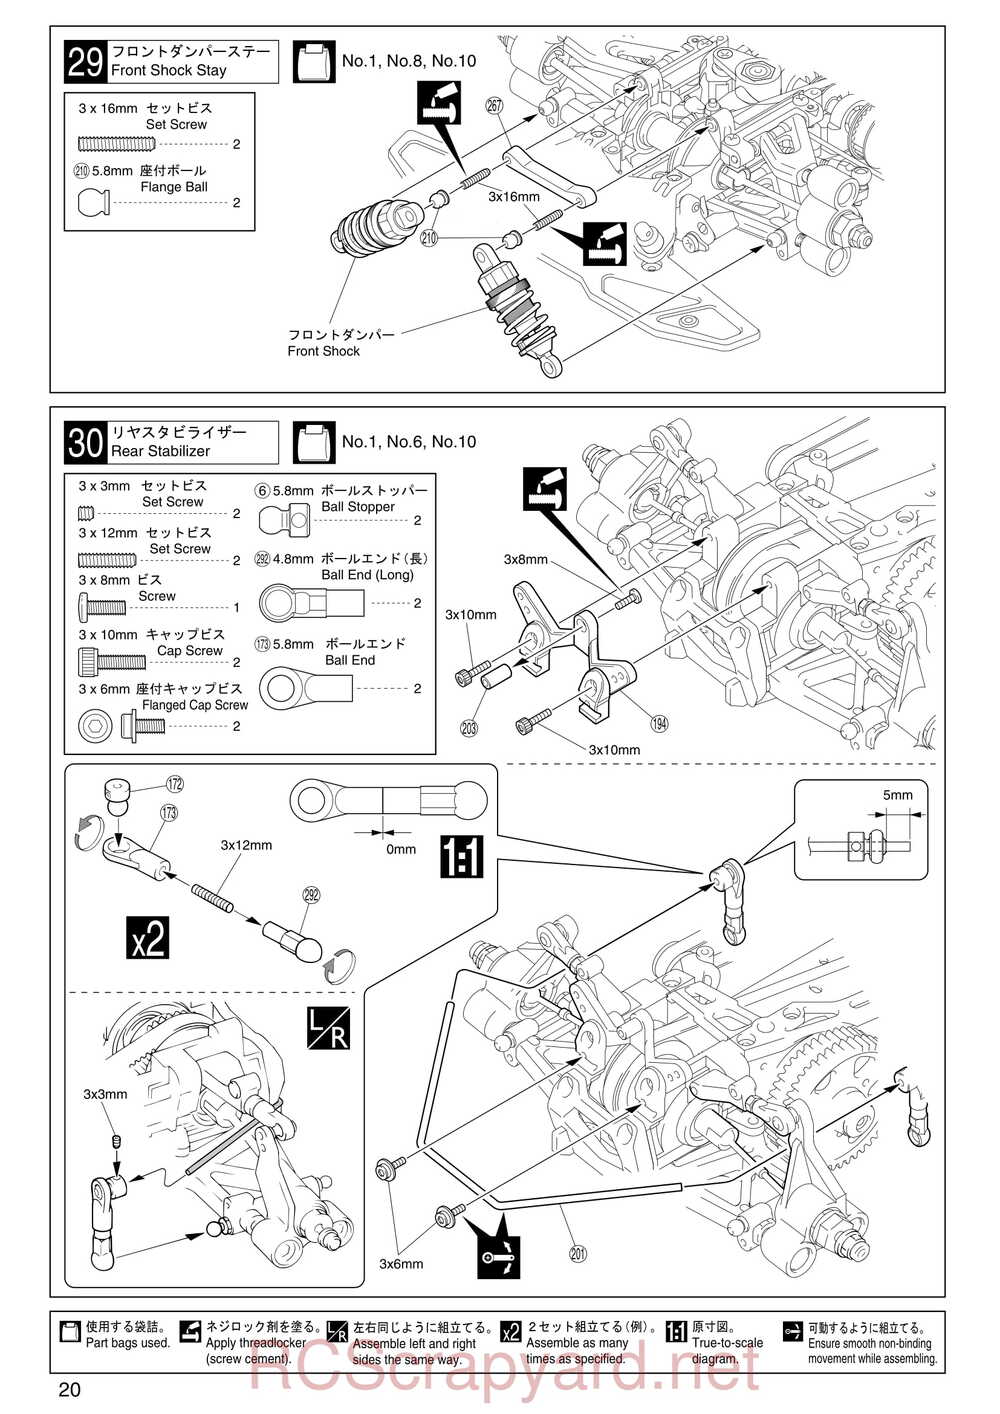 Kyosho - 31255 - V-One RR Evolution - Manual - Page 20